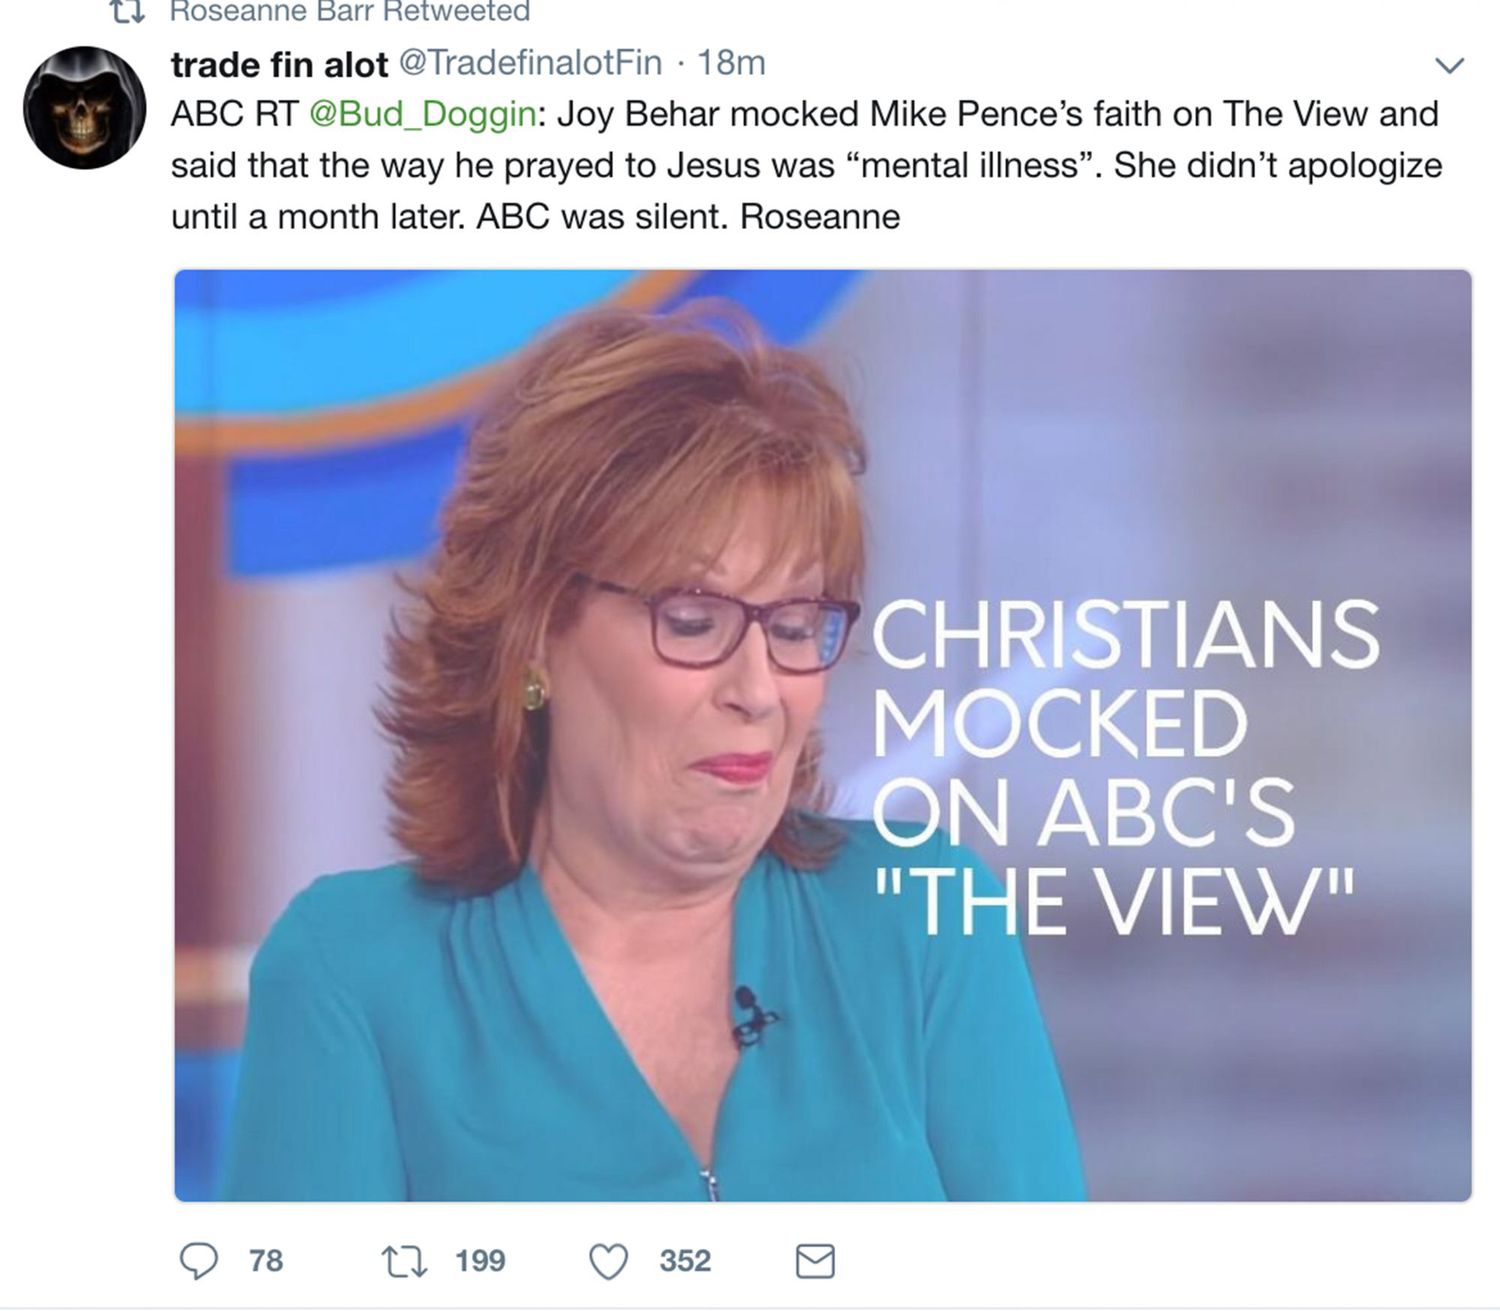 Roseanne Barr tweetsCredit: Roseanne Barr/Twitter